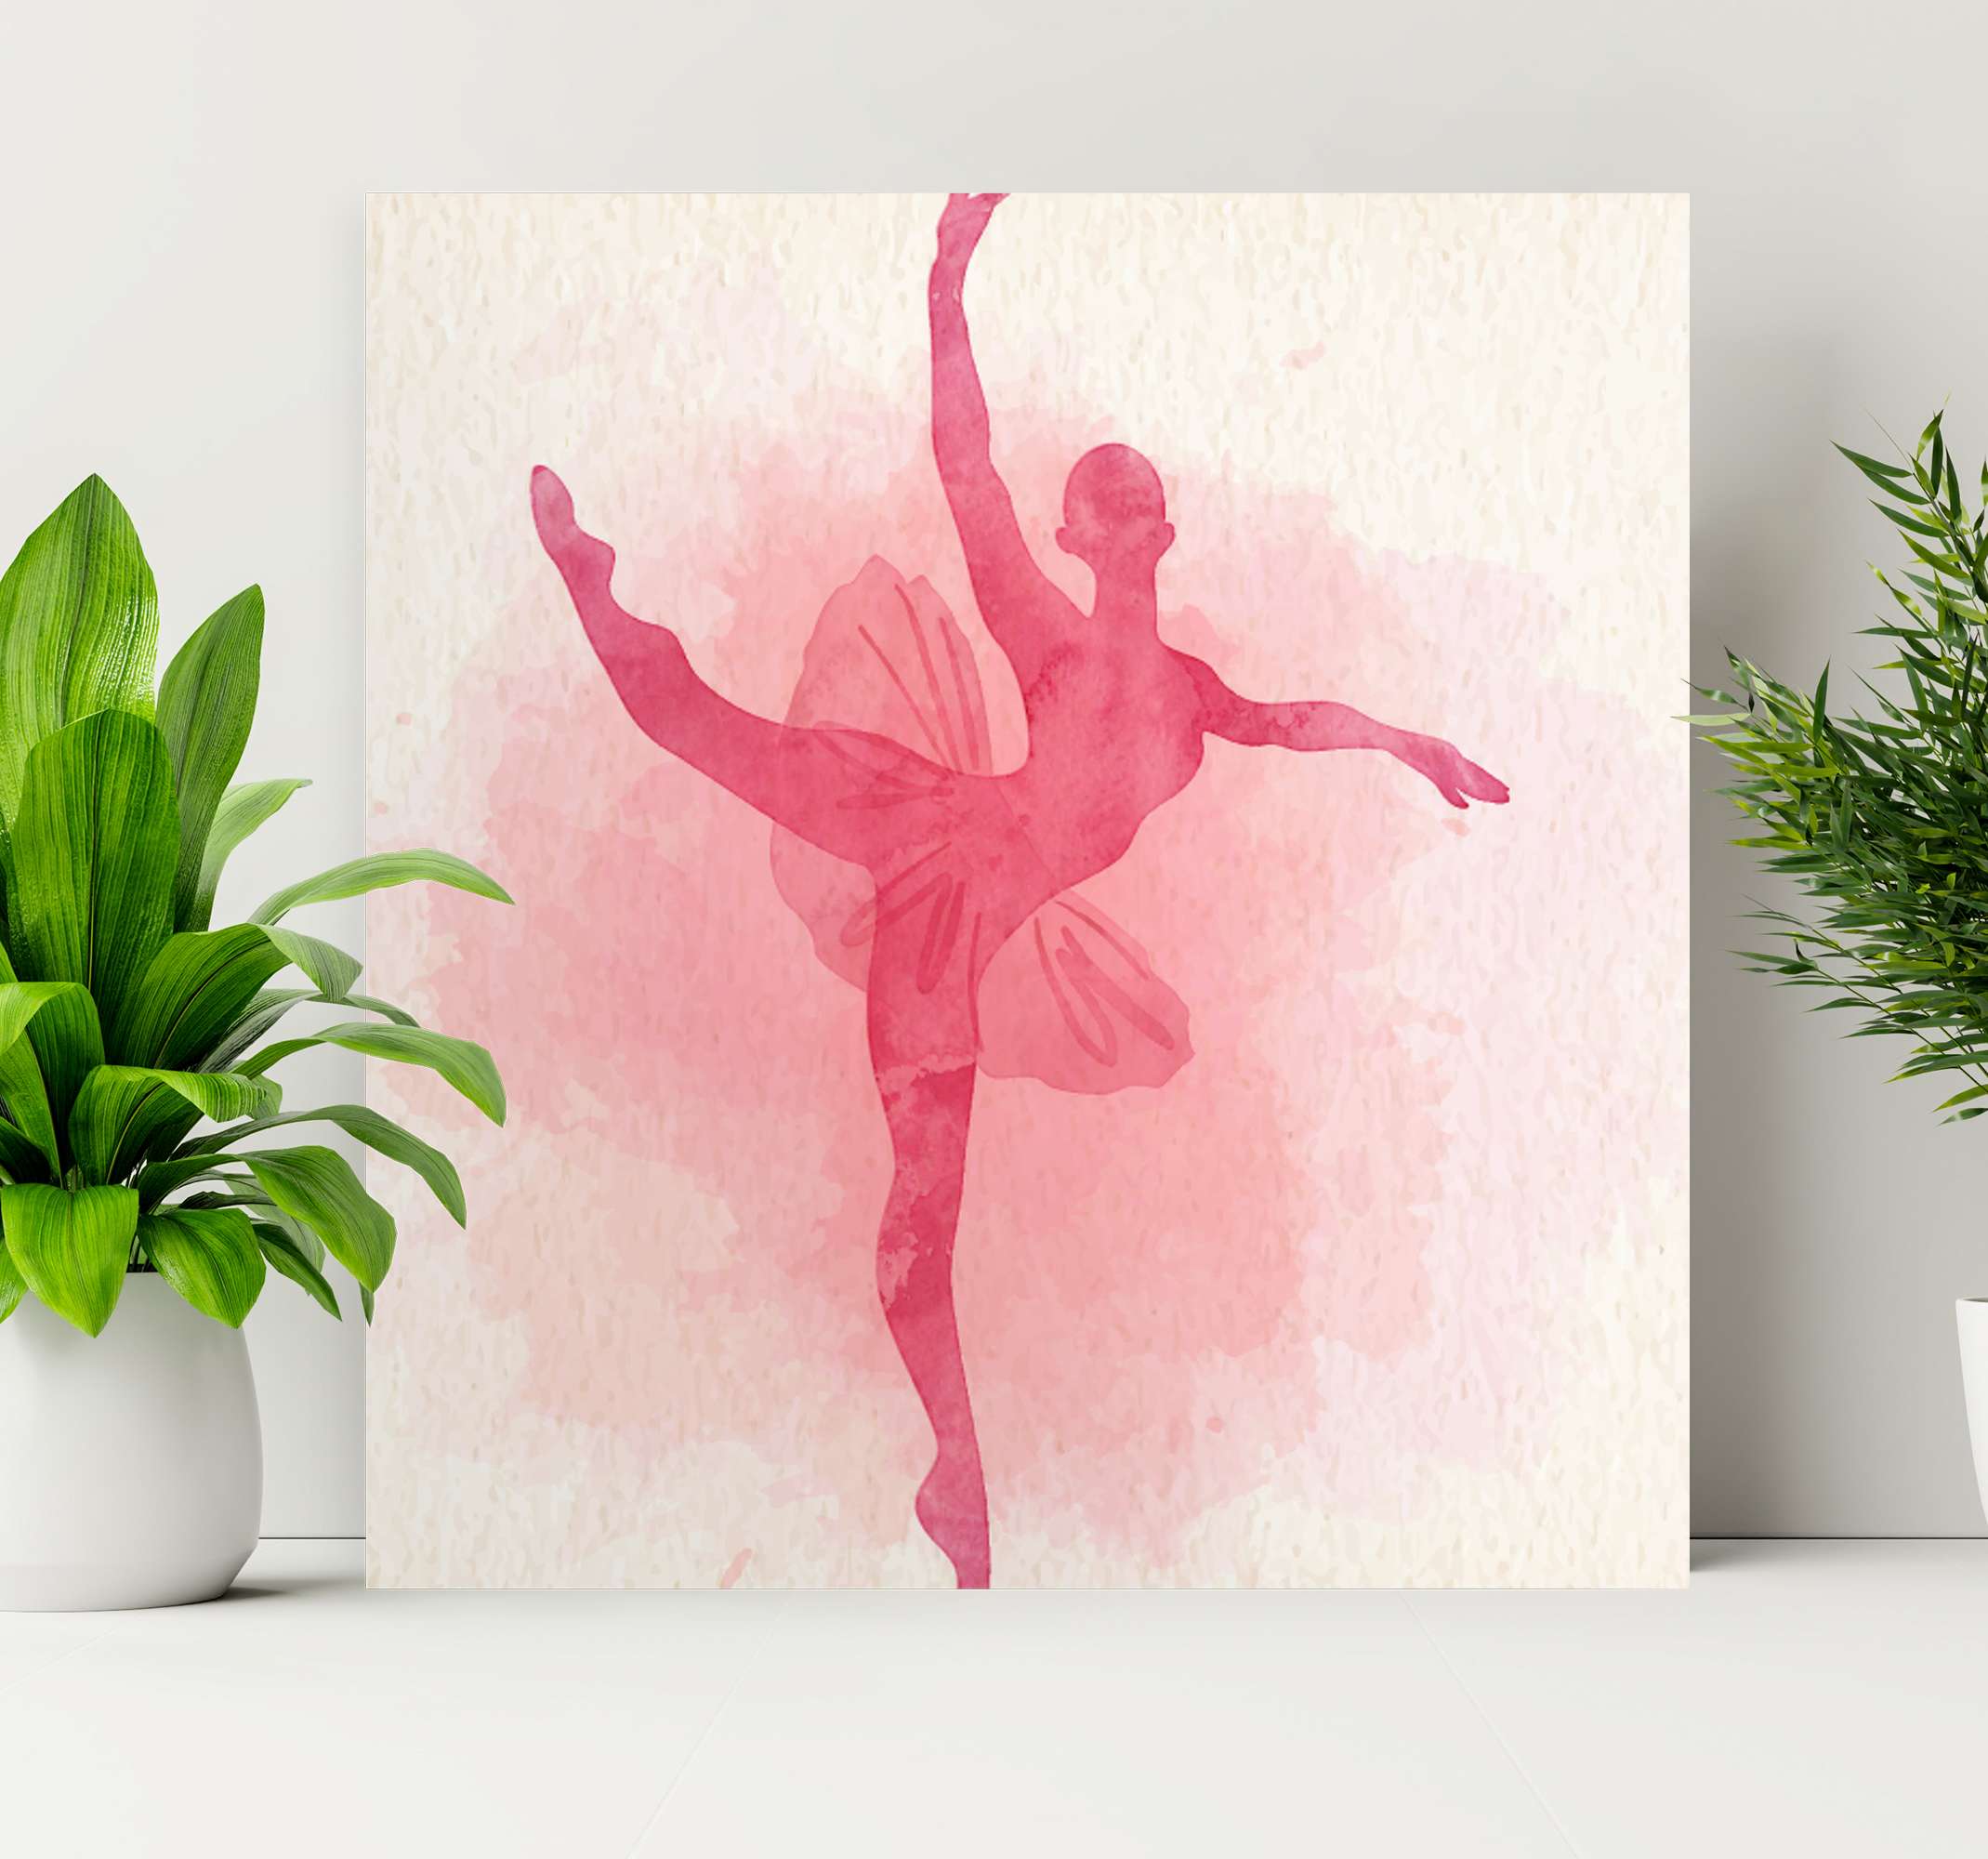 Peinture de ballet, Danseuse étoile